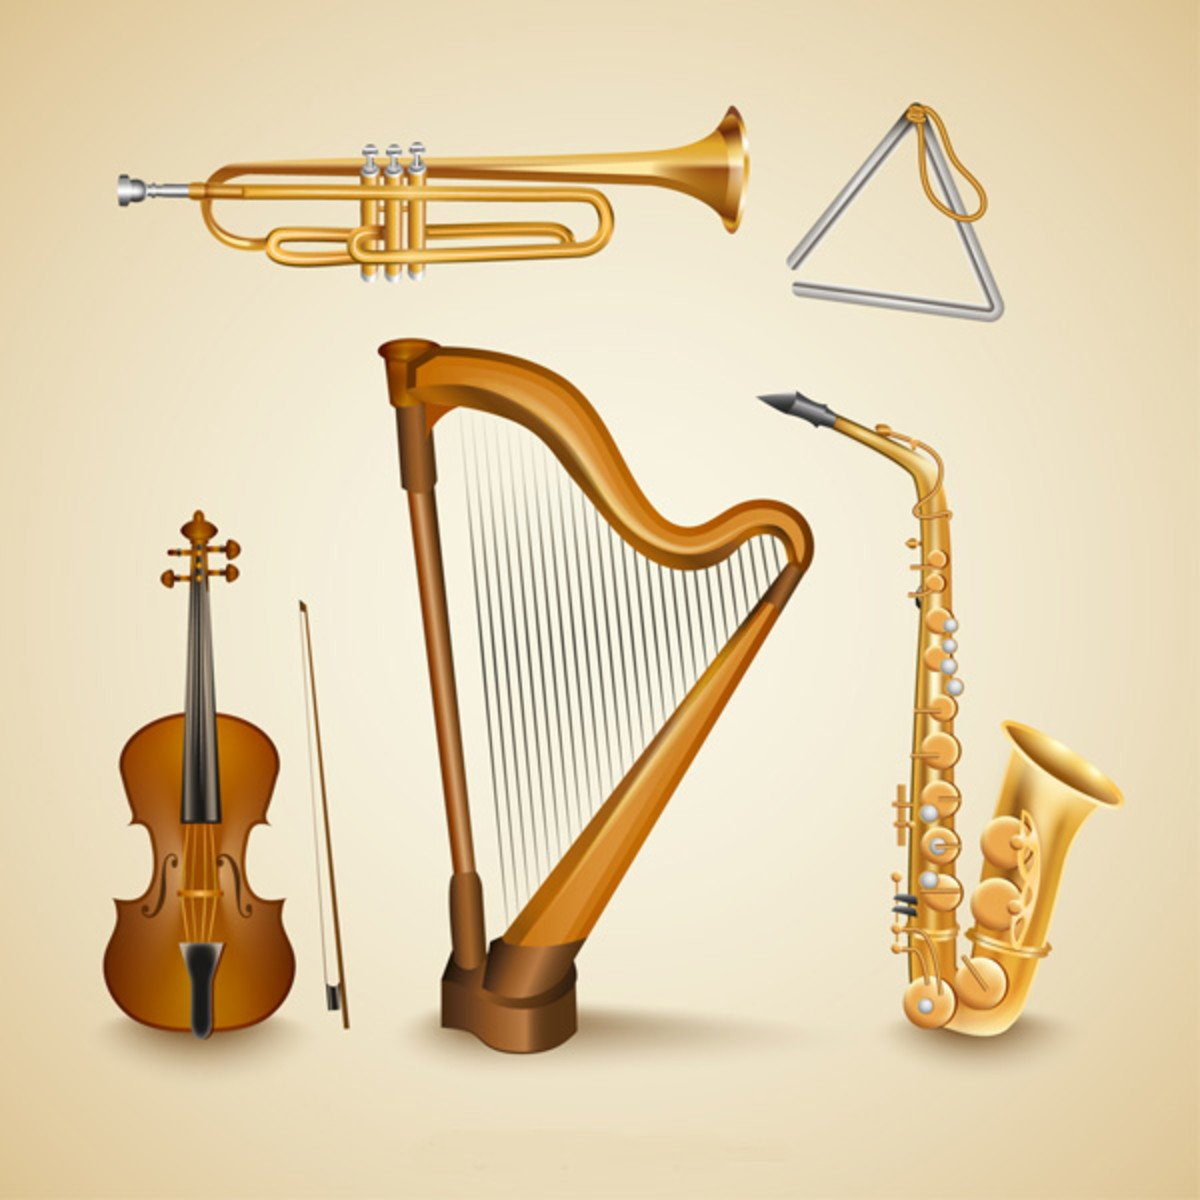 Музыкальный инструмент на д. Музыкальные инструменты. Музыкалныеинструменты. Музыкальный и=нструмент. Музыкальные инстремент.